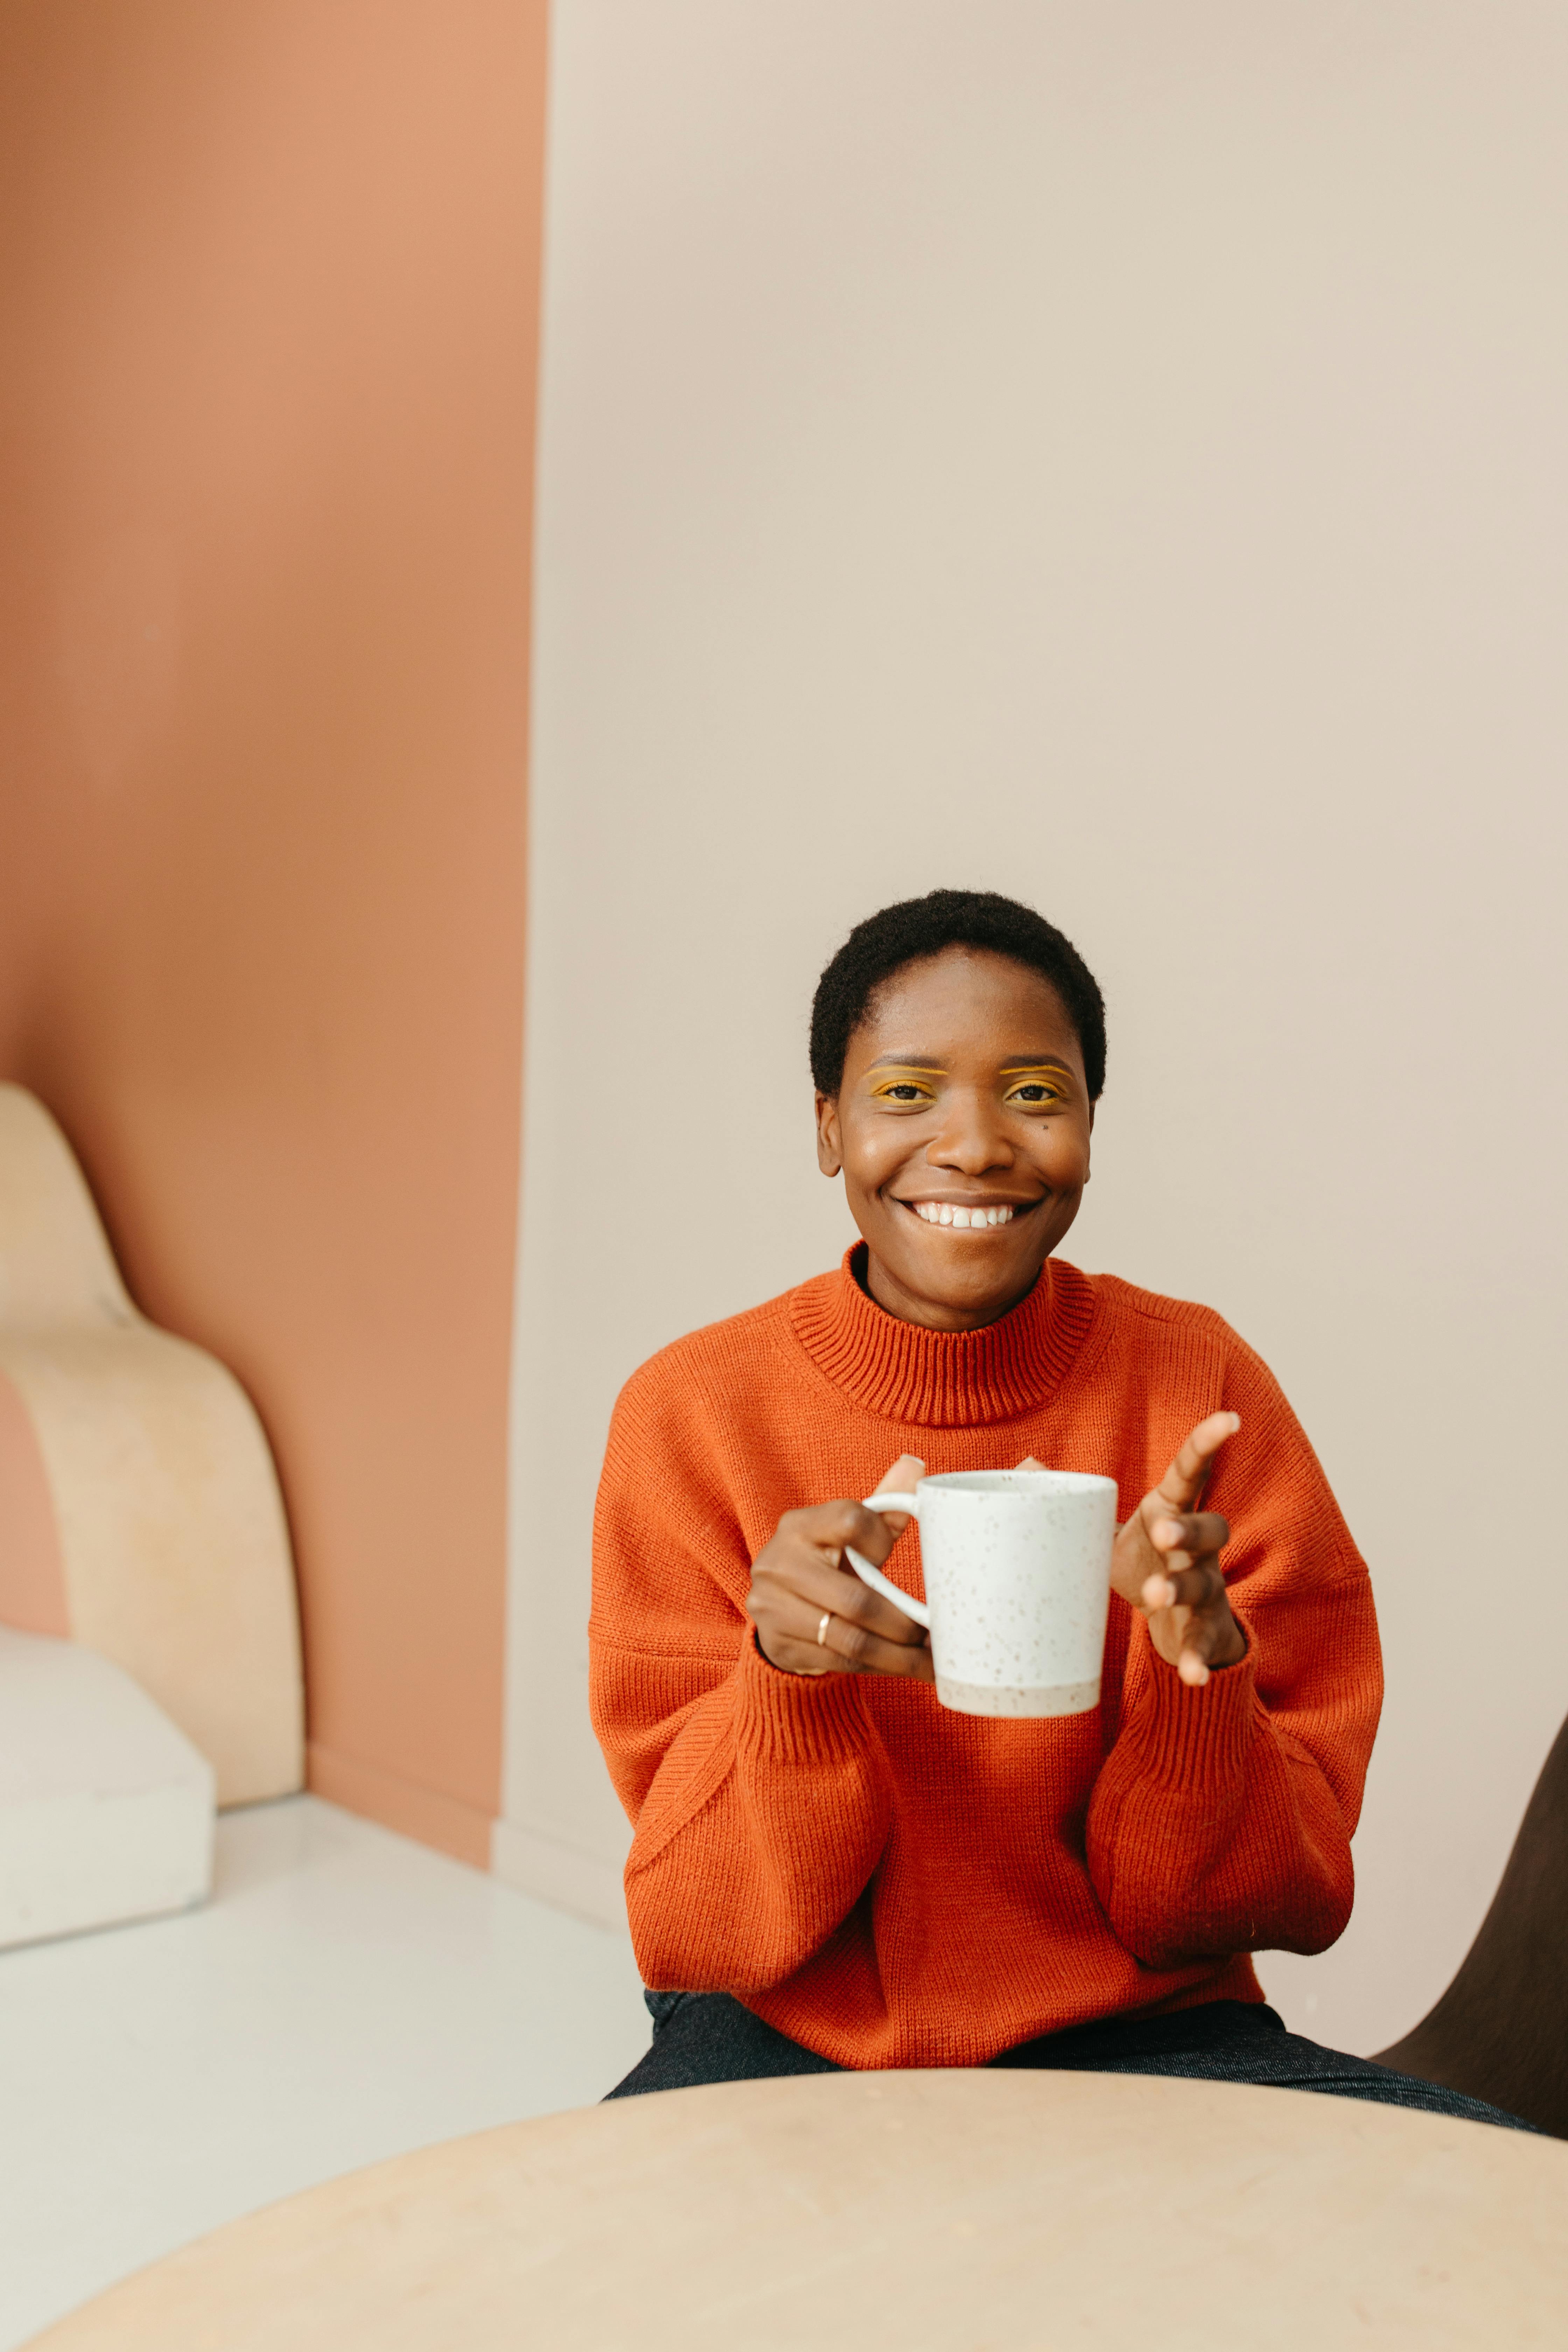 woman in orange sweater holding white ceramic mug smiling